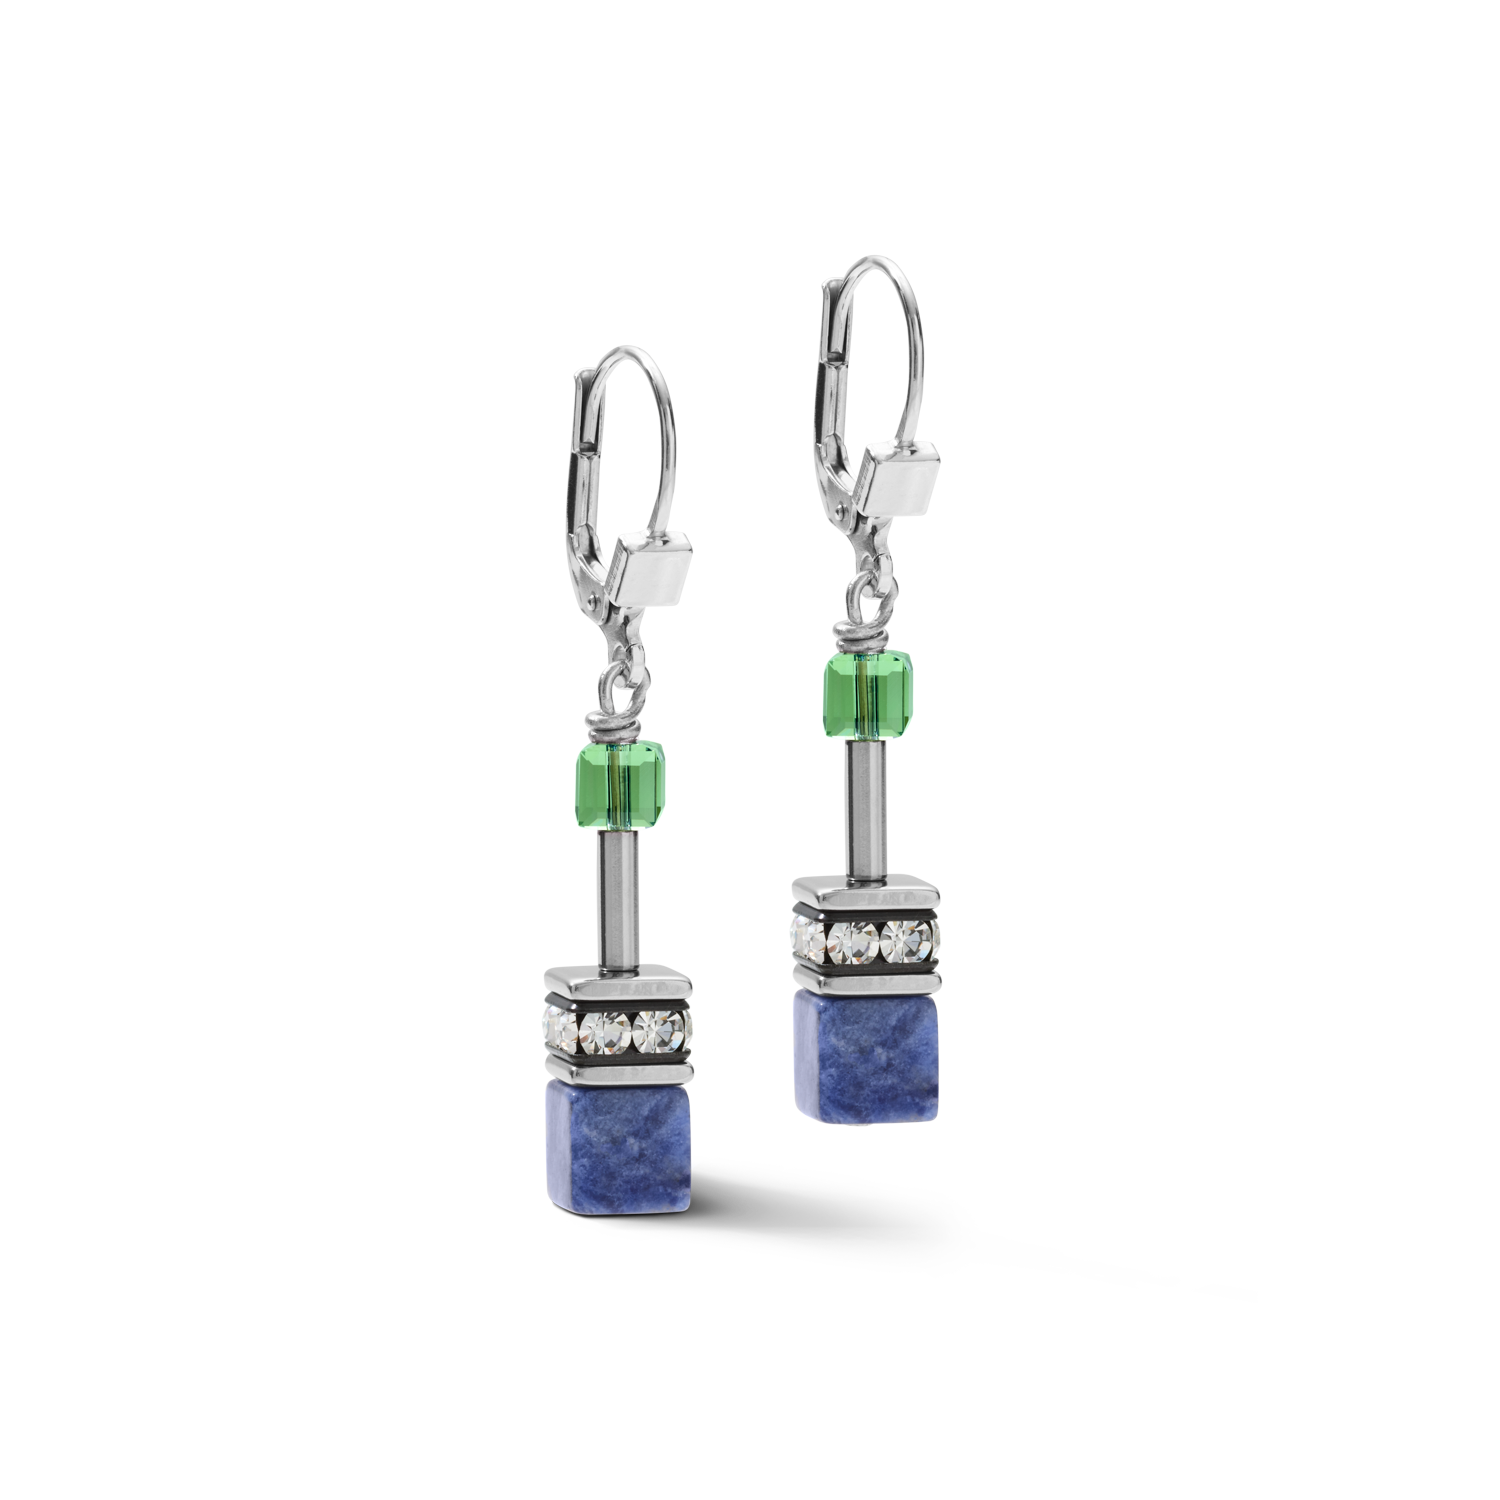 Earrings GeoCUBE® Crystals & Gemstones blue-green